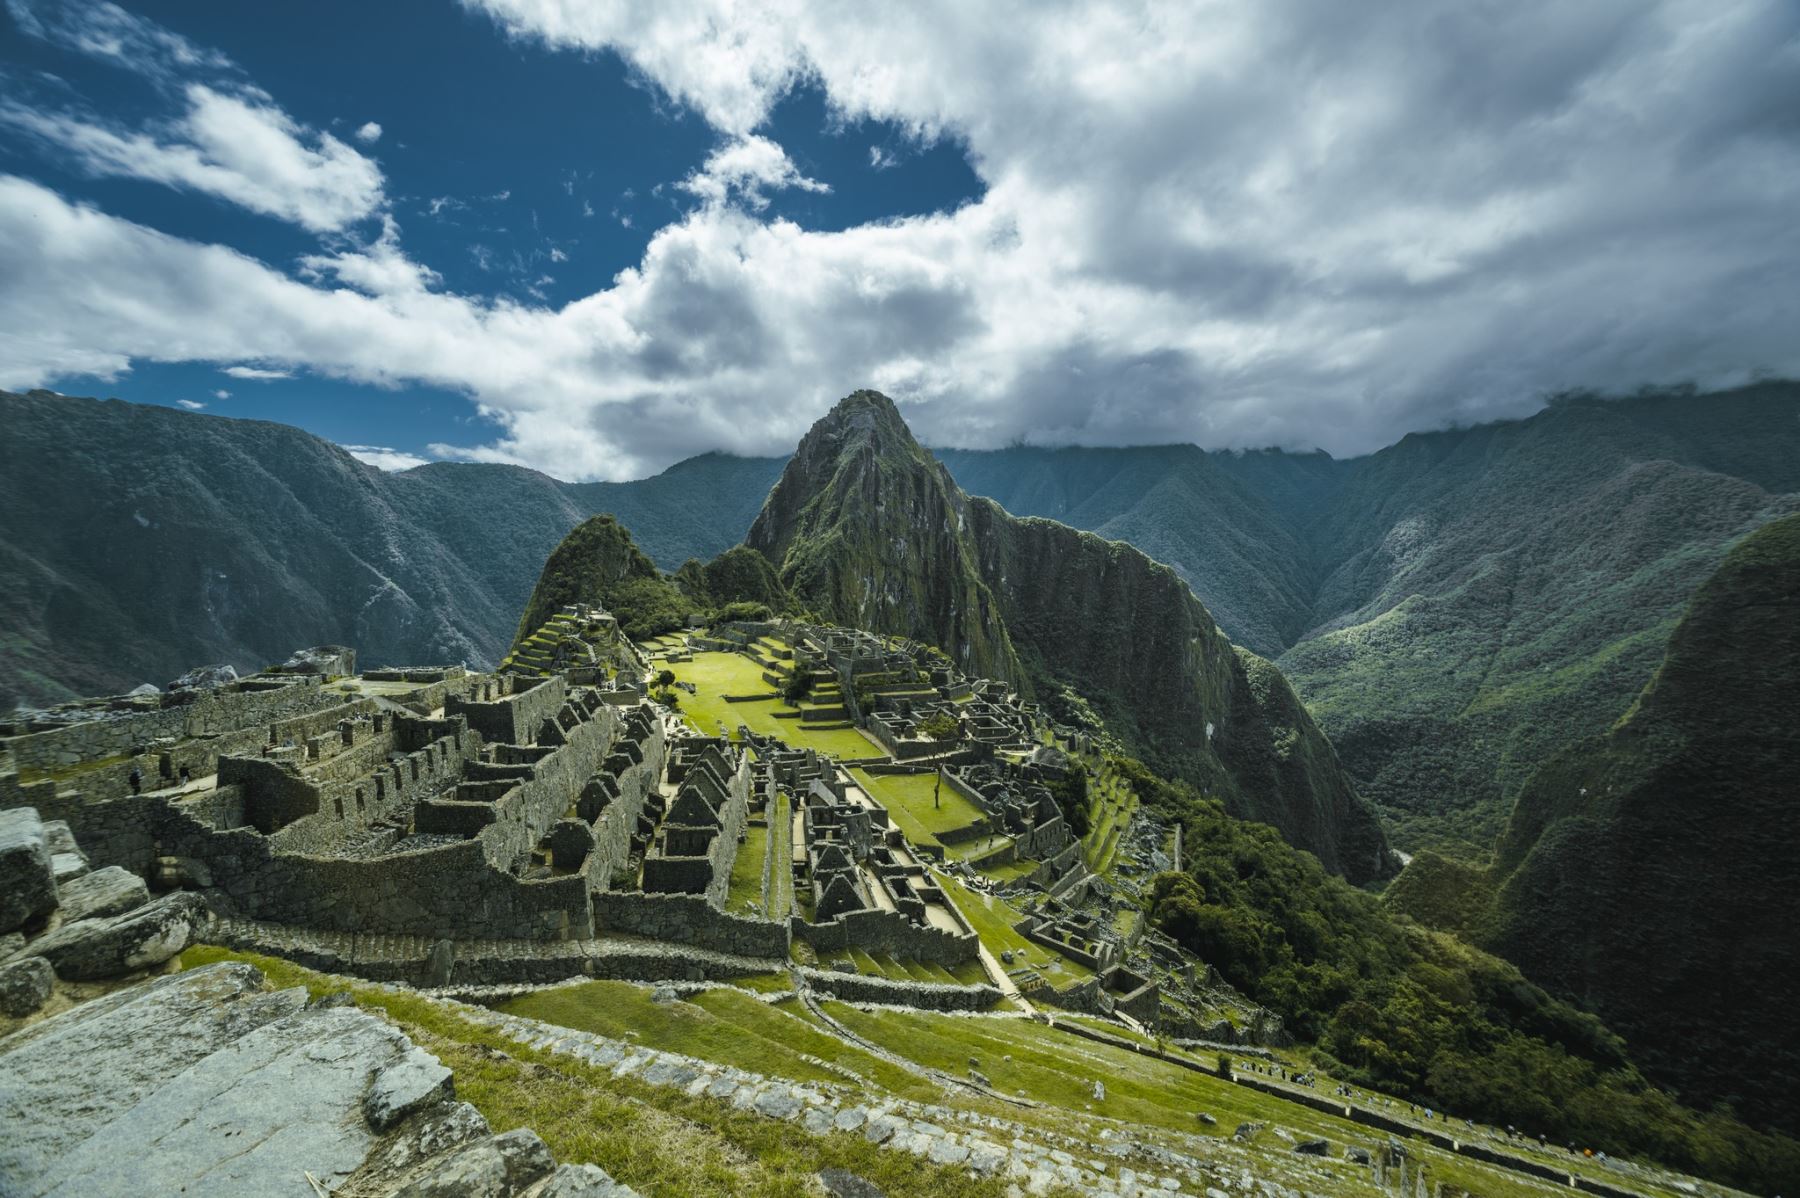 Expertos en turismo y preservación del patrimonio cultural presentarán la próxima semana su informe ante pedido de incremento de aforo de visitantes en Machu Picchu. Cortesía